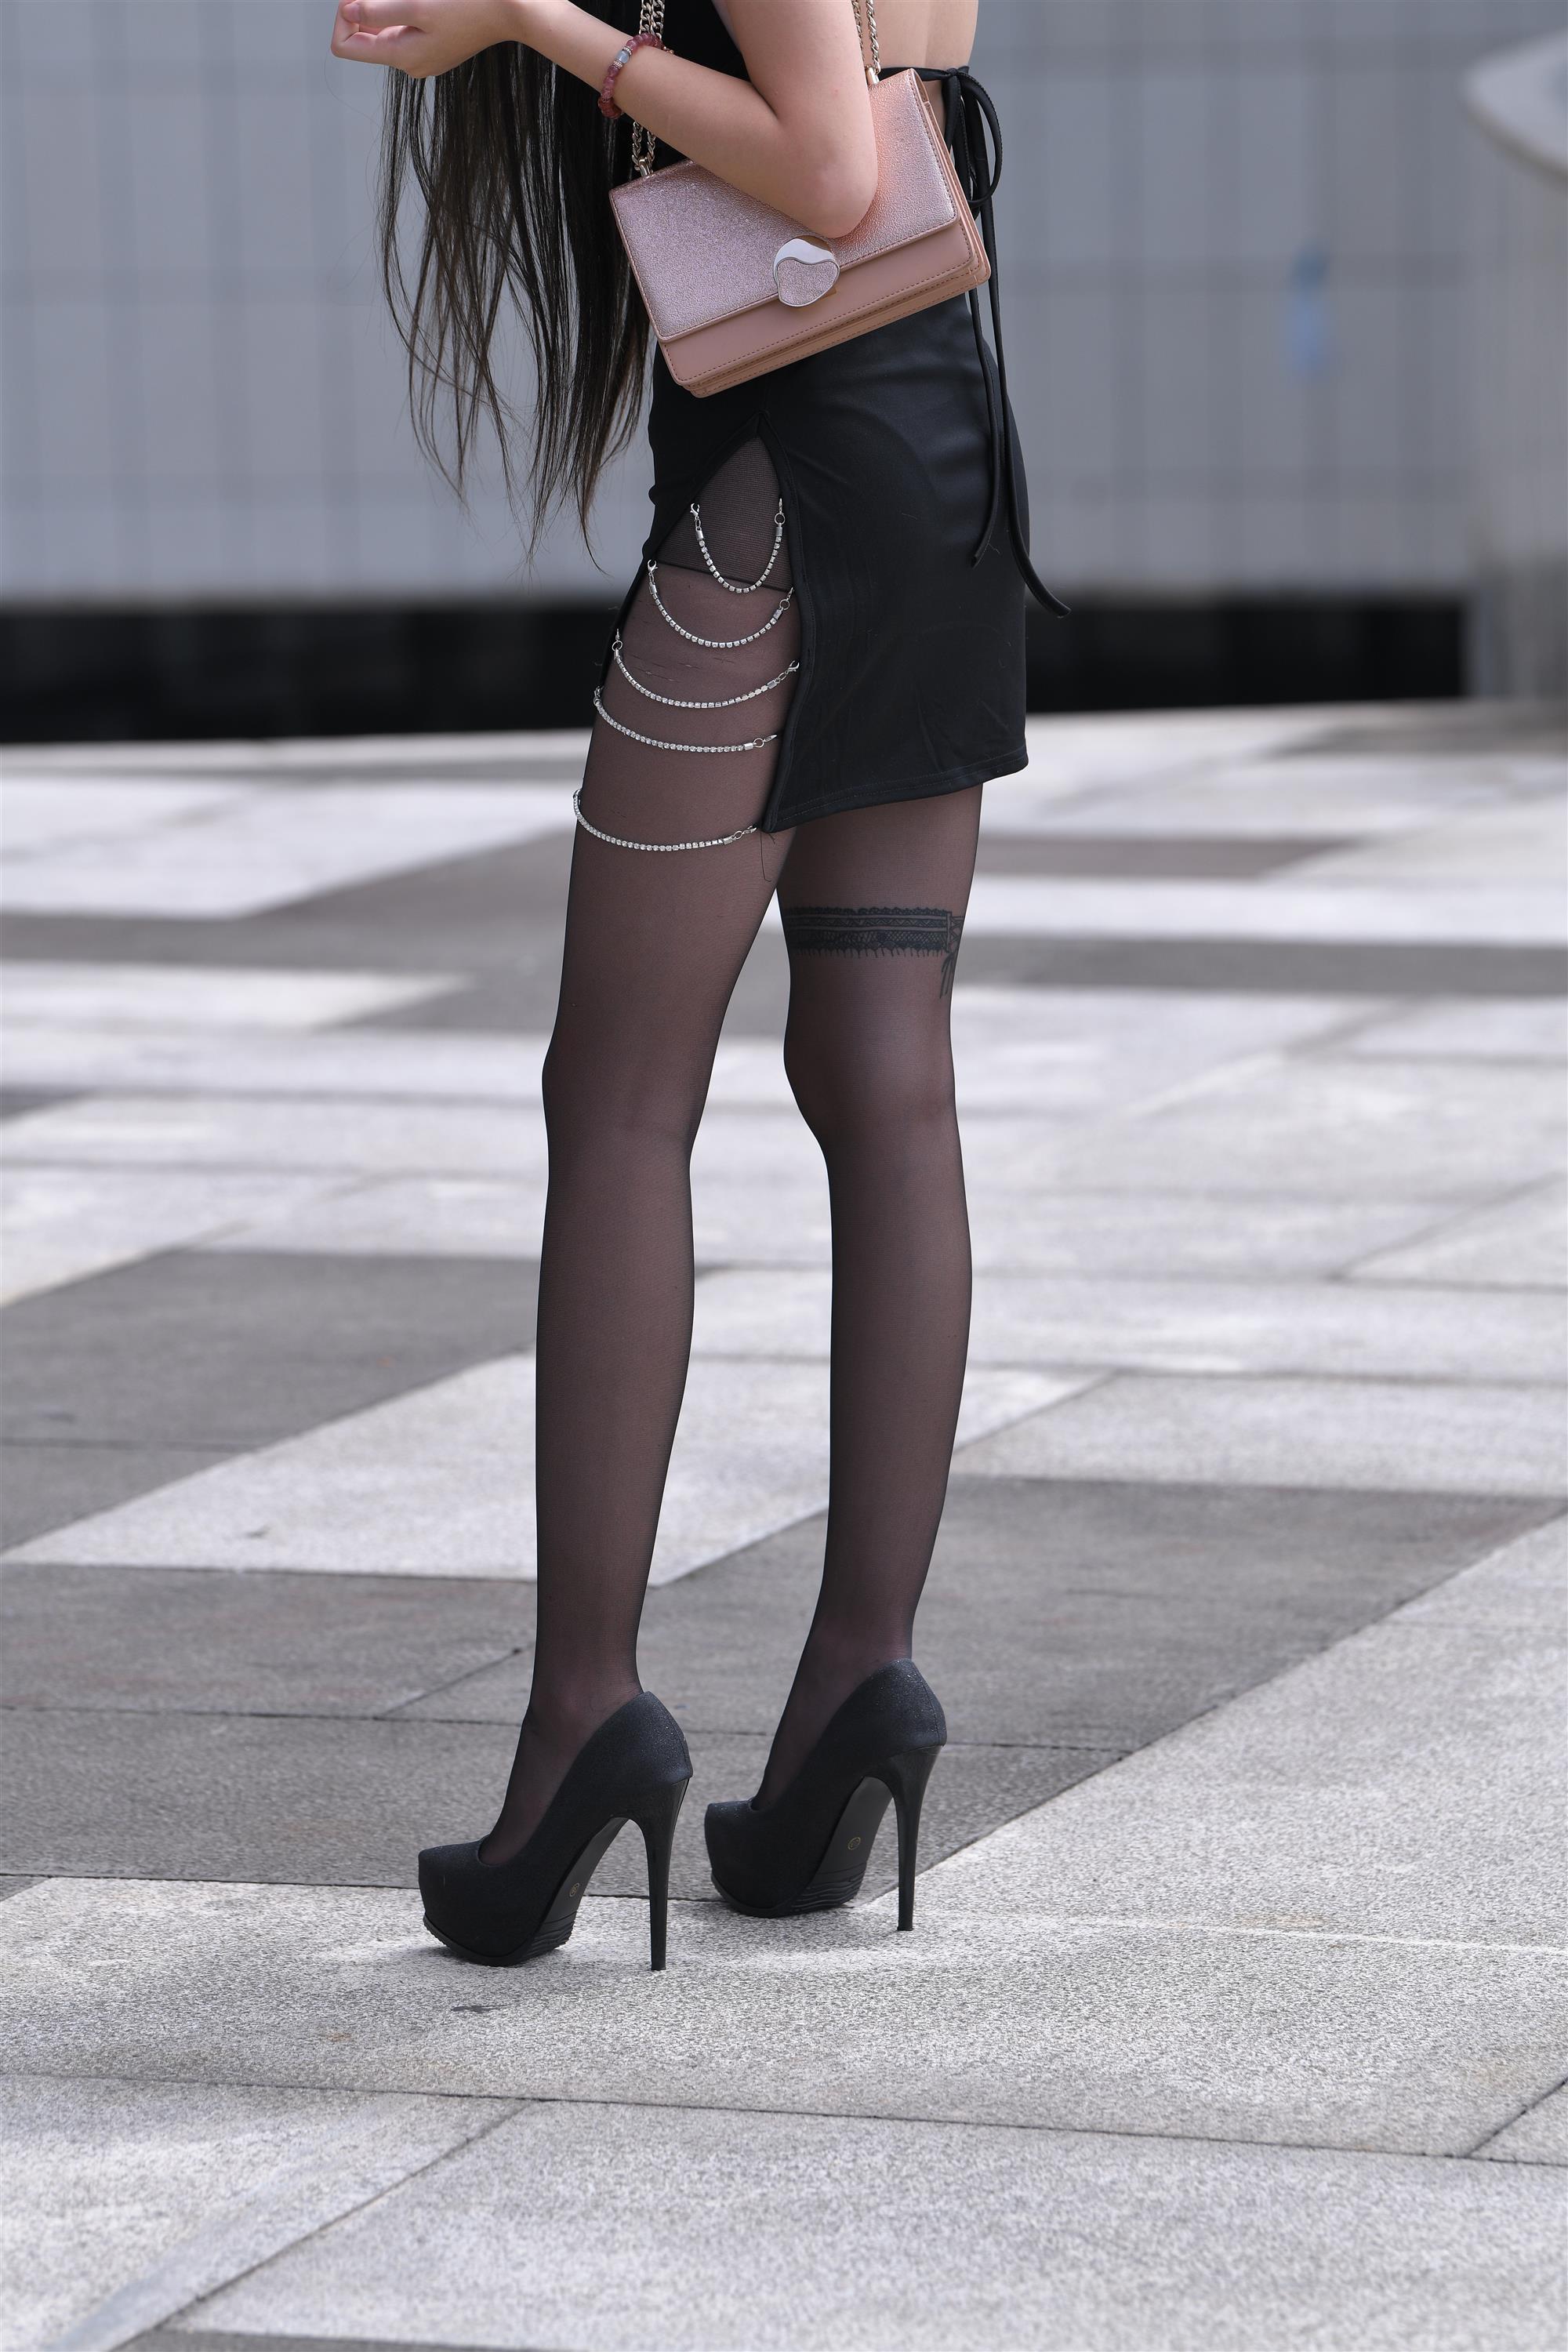 Street black stockings and high heels - 35.jpg